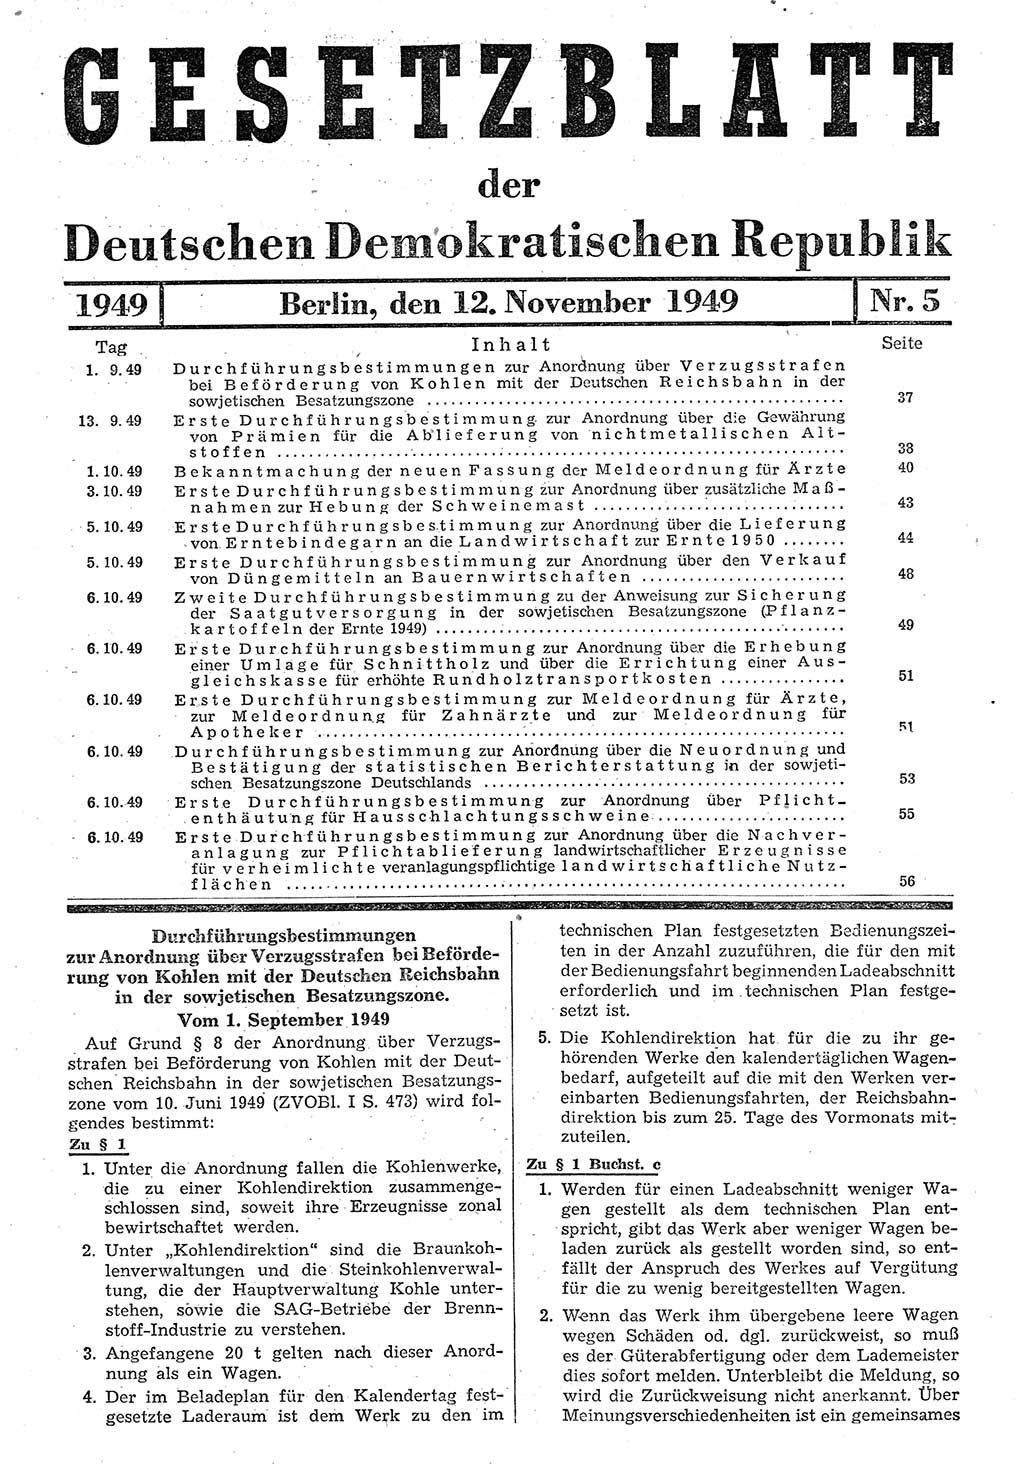 Gesetzblatt (GBl.) der Deutschen Demokratischen Republik (DDR) 1949, Seite 37 (GBl. DDR 1949, S. 37)